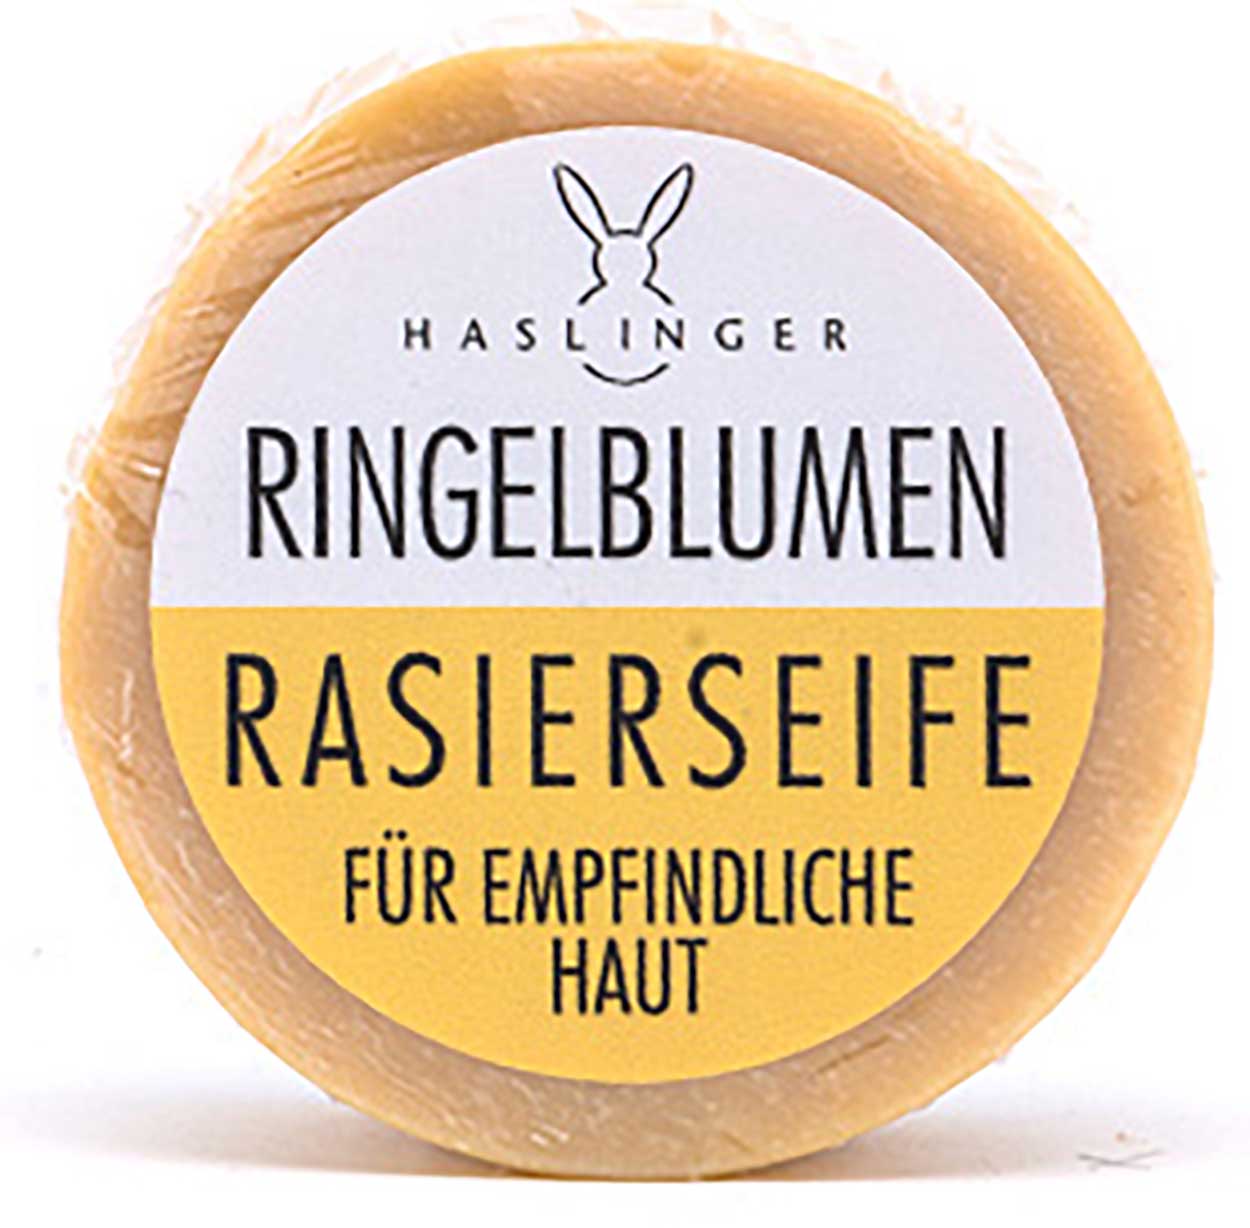 HASLINGER Ringelblumen Rasierseife, 60 g Hergestellt in Österreich 1802